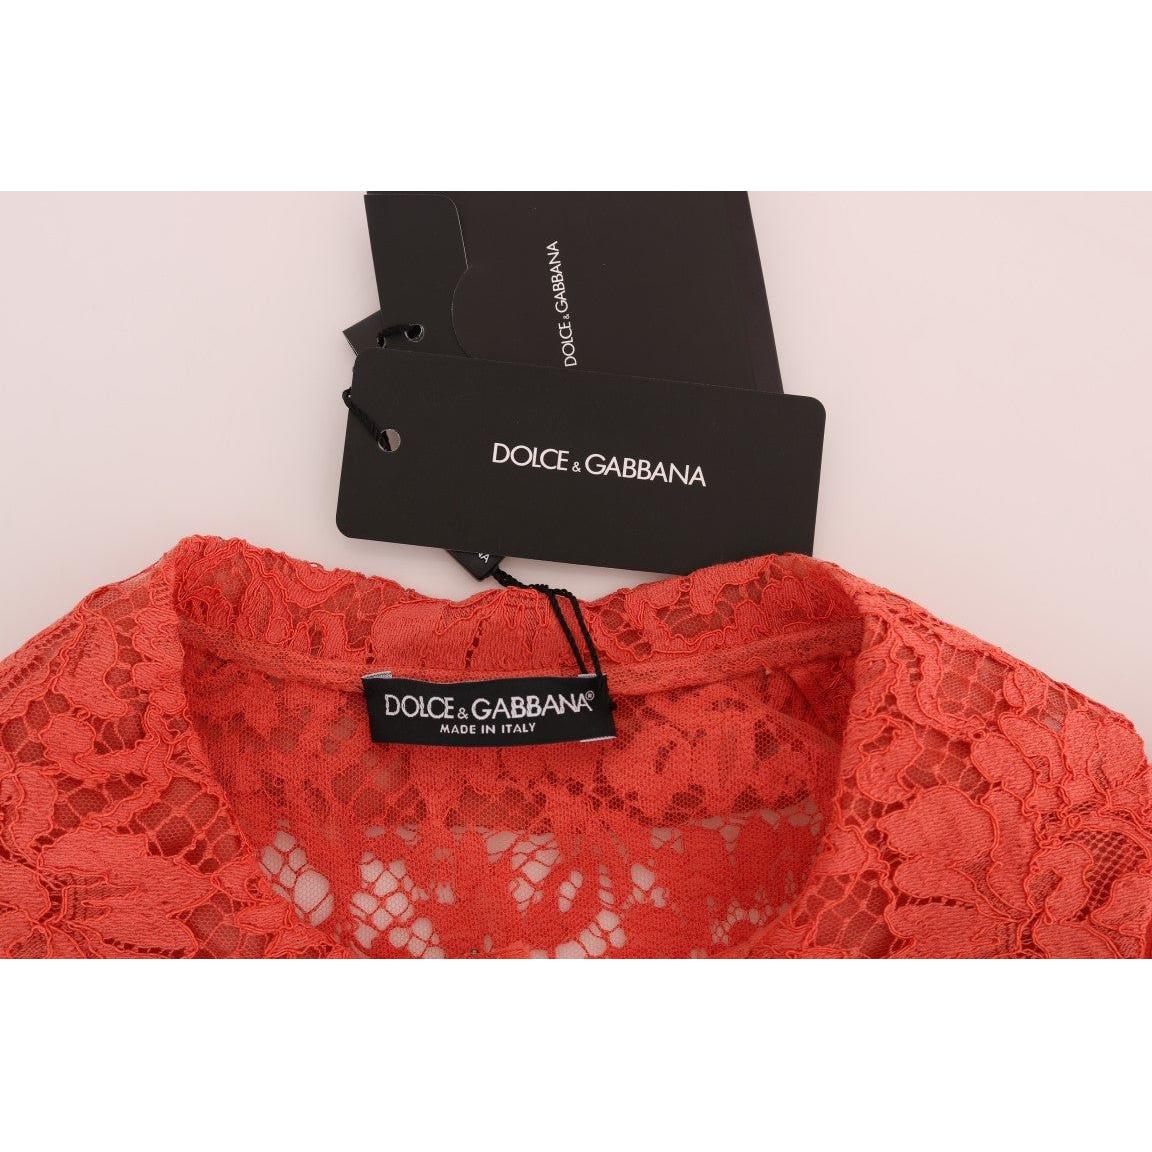 Dolce & Gabbana Elegant Orange Floral Lace Crystal Cardigan Blouse orange-crystal-buttons-floral-lace-blouse 460111-orange-crystal-buttons-floral-lace-blouse-4.jpg